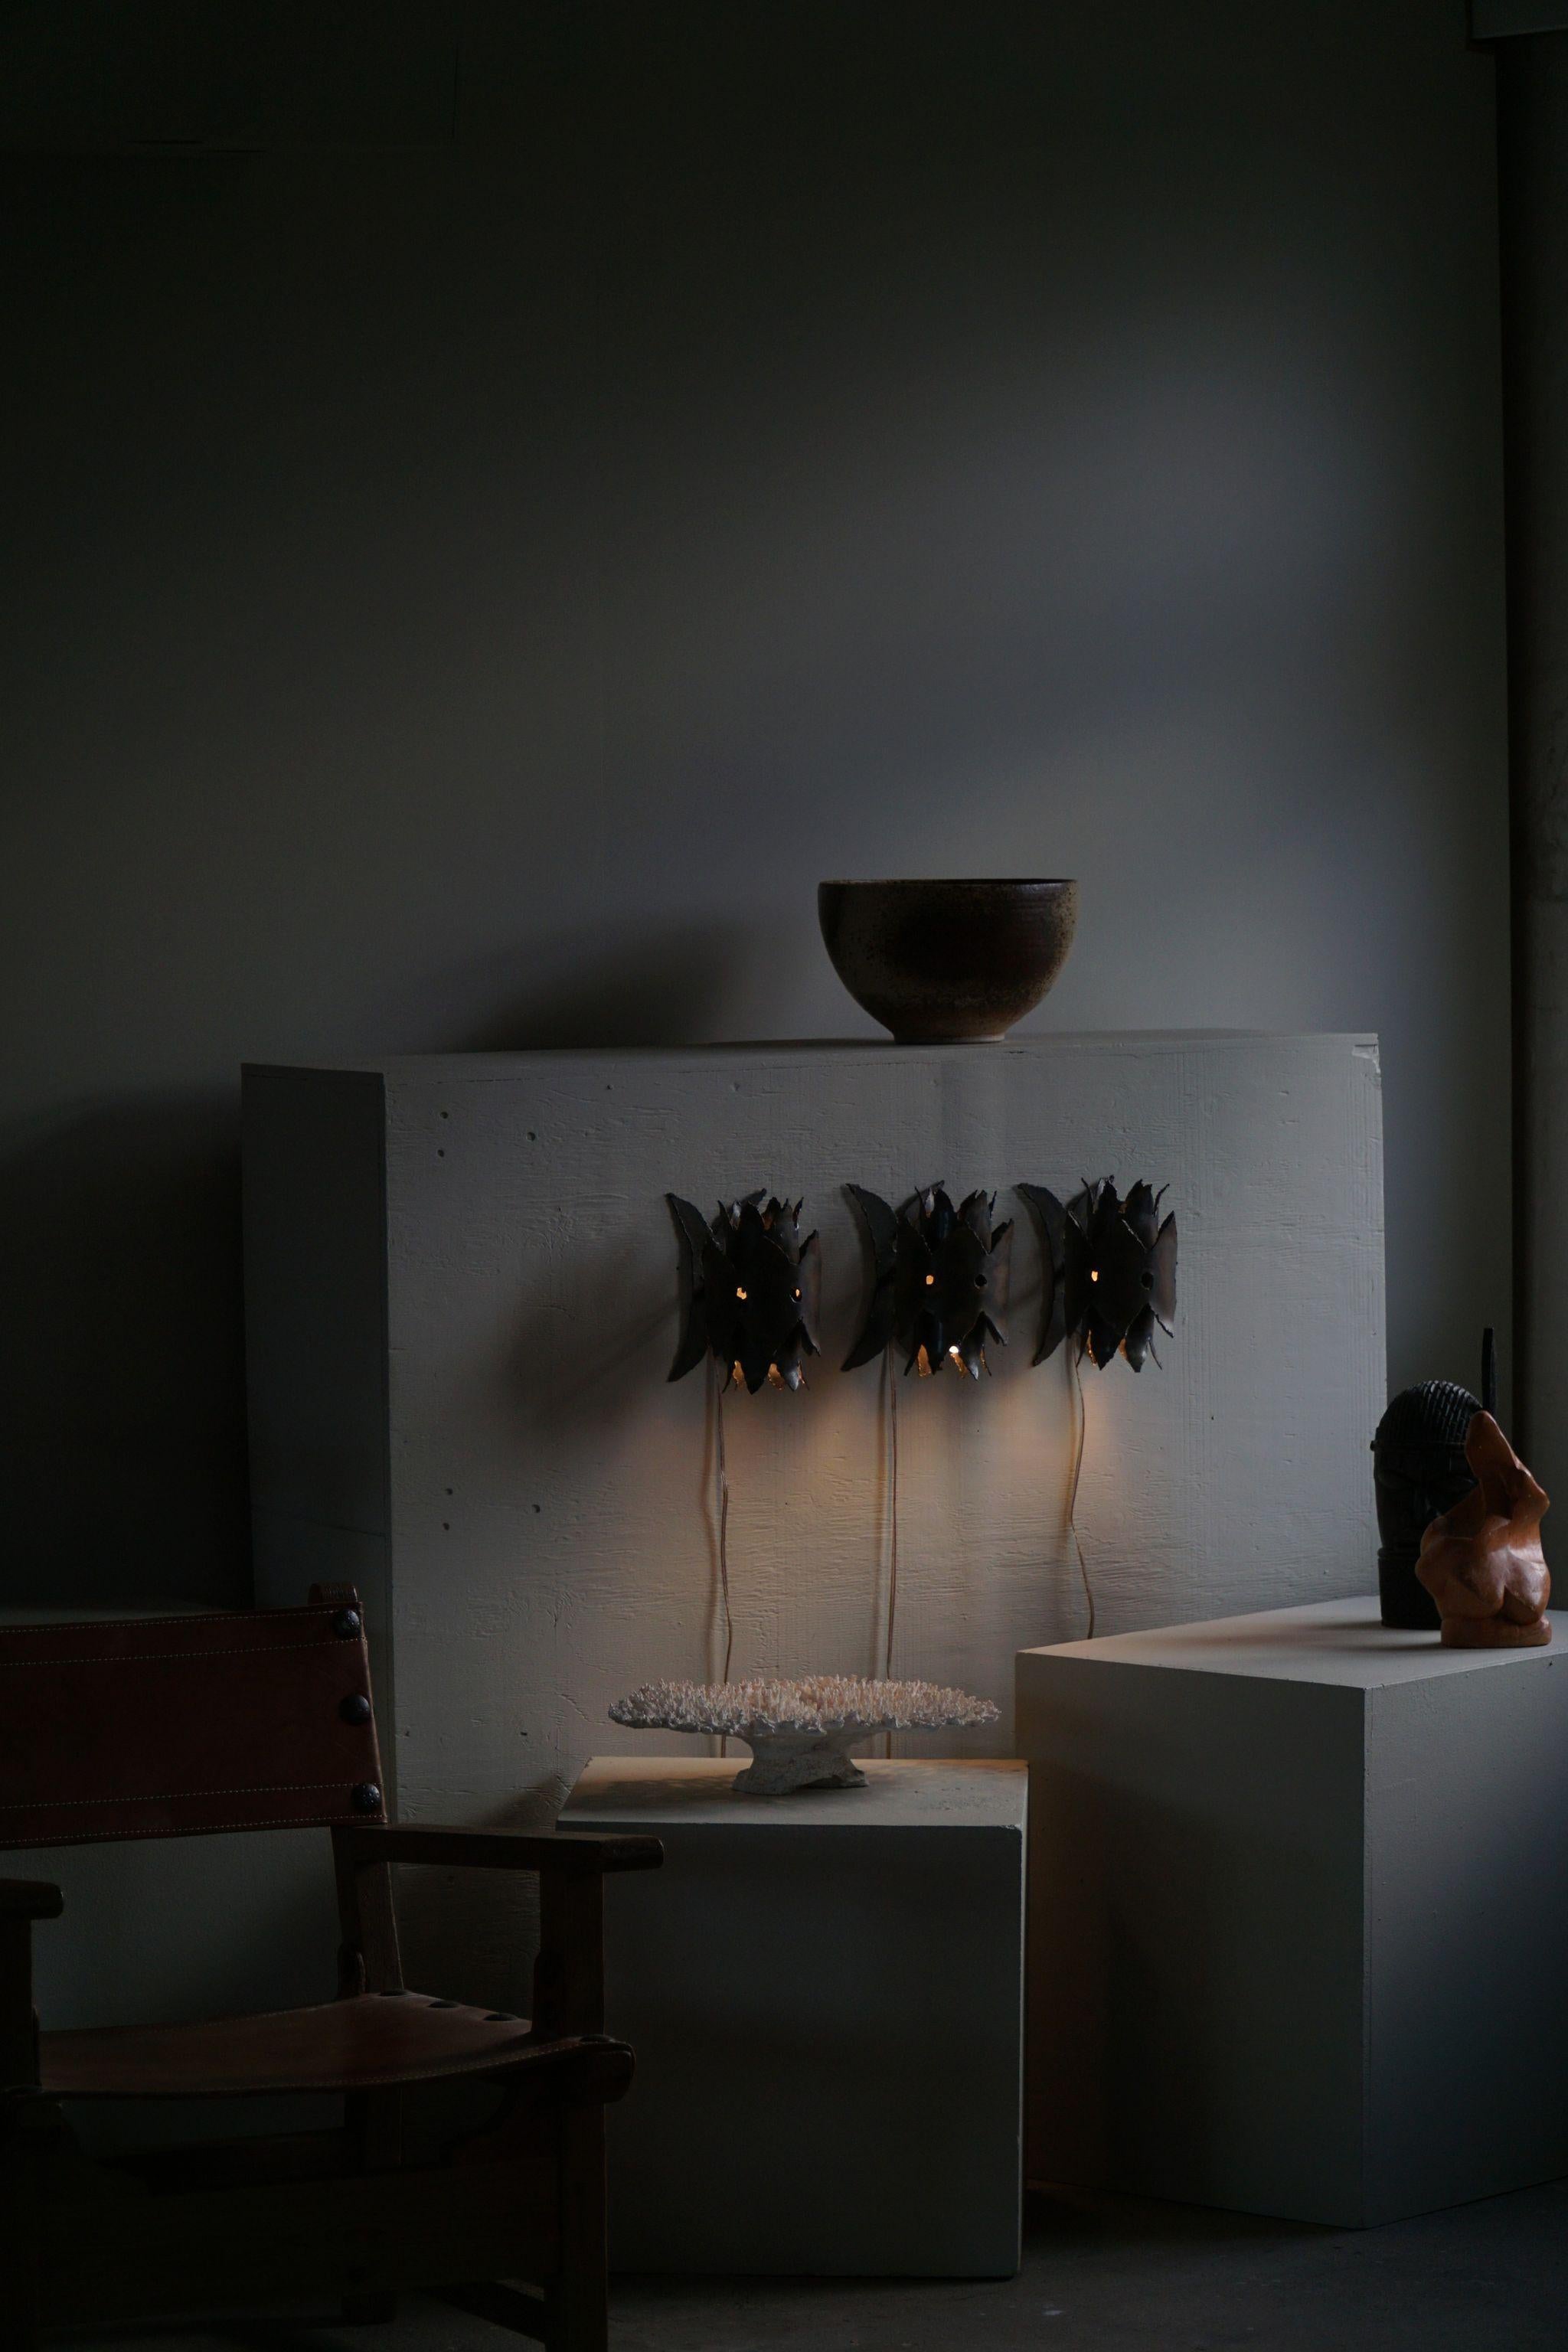 Satz von 3 dänischen modernen brutalistischen Wandlampen aus Eisen, hergestellt im Stil von Svend Aage Holm Sørensen in den 1960er Jahren.
Die eisernen Blütenblätter werden mit dem Brennschneider geschnitten und mit Säure behandelt - Holm Sørensens